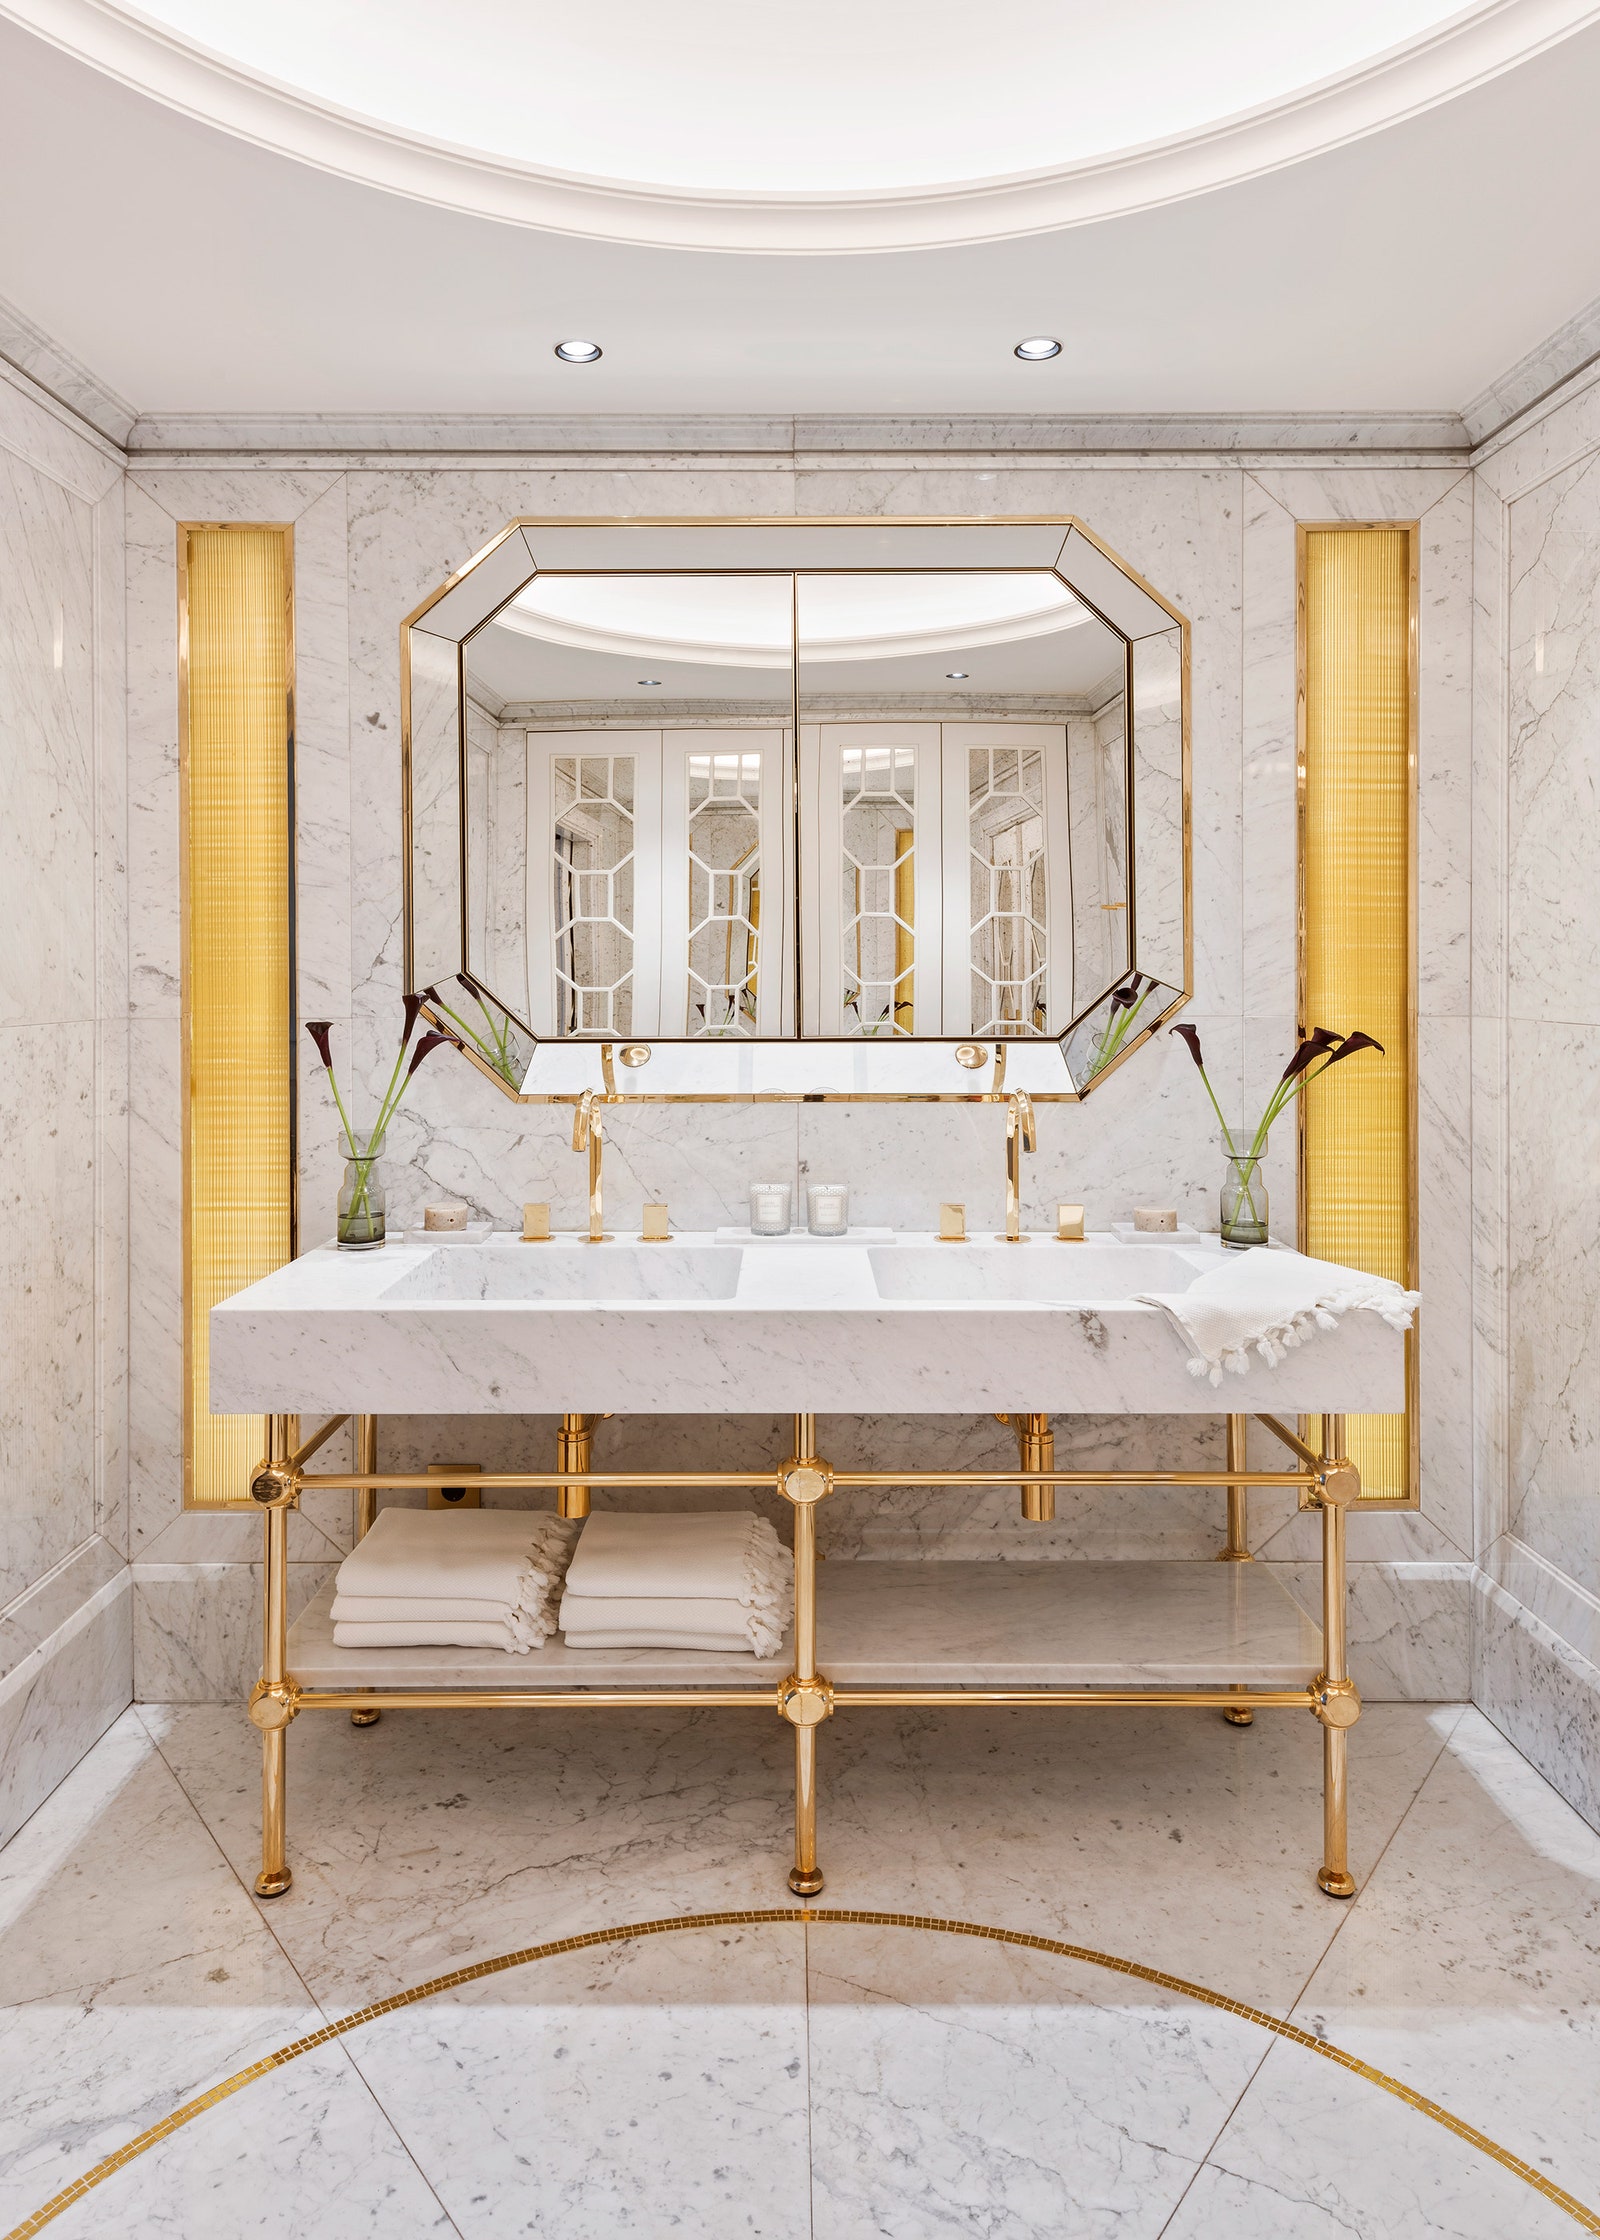 Ванная комната. Раковина из мрамора и позолоченного металла и зеркало сделаны на заказ смесители Fantini Rubinetti.